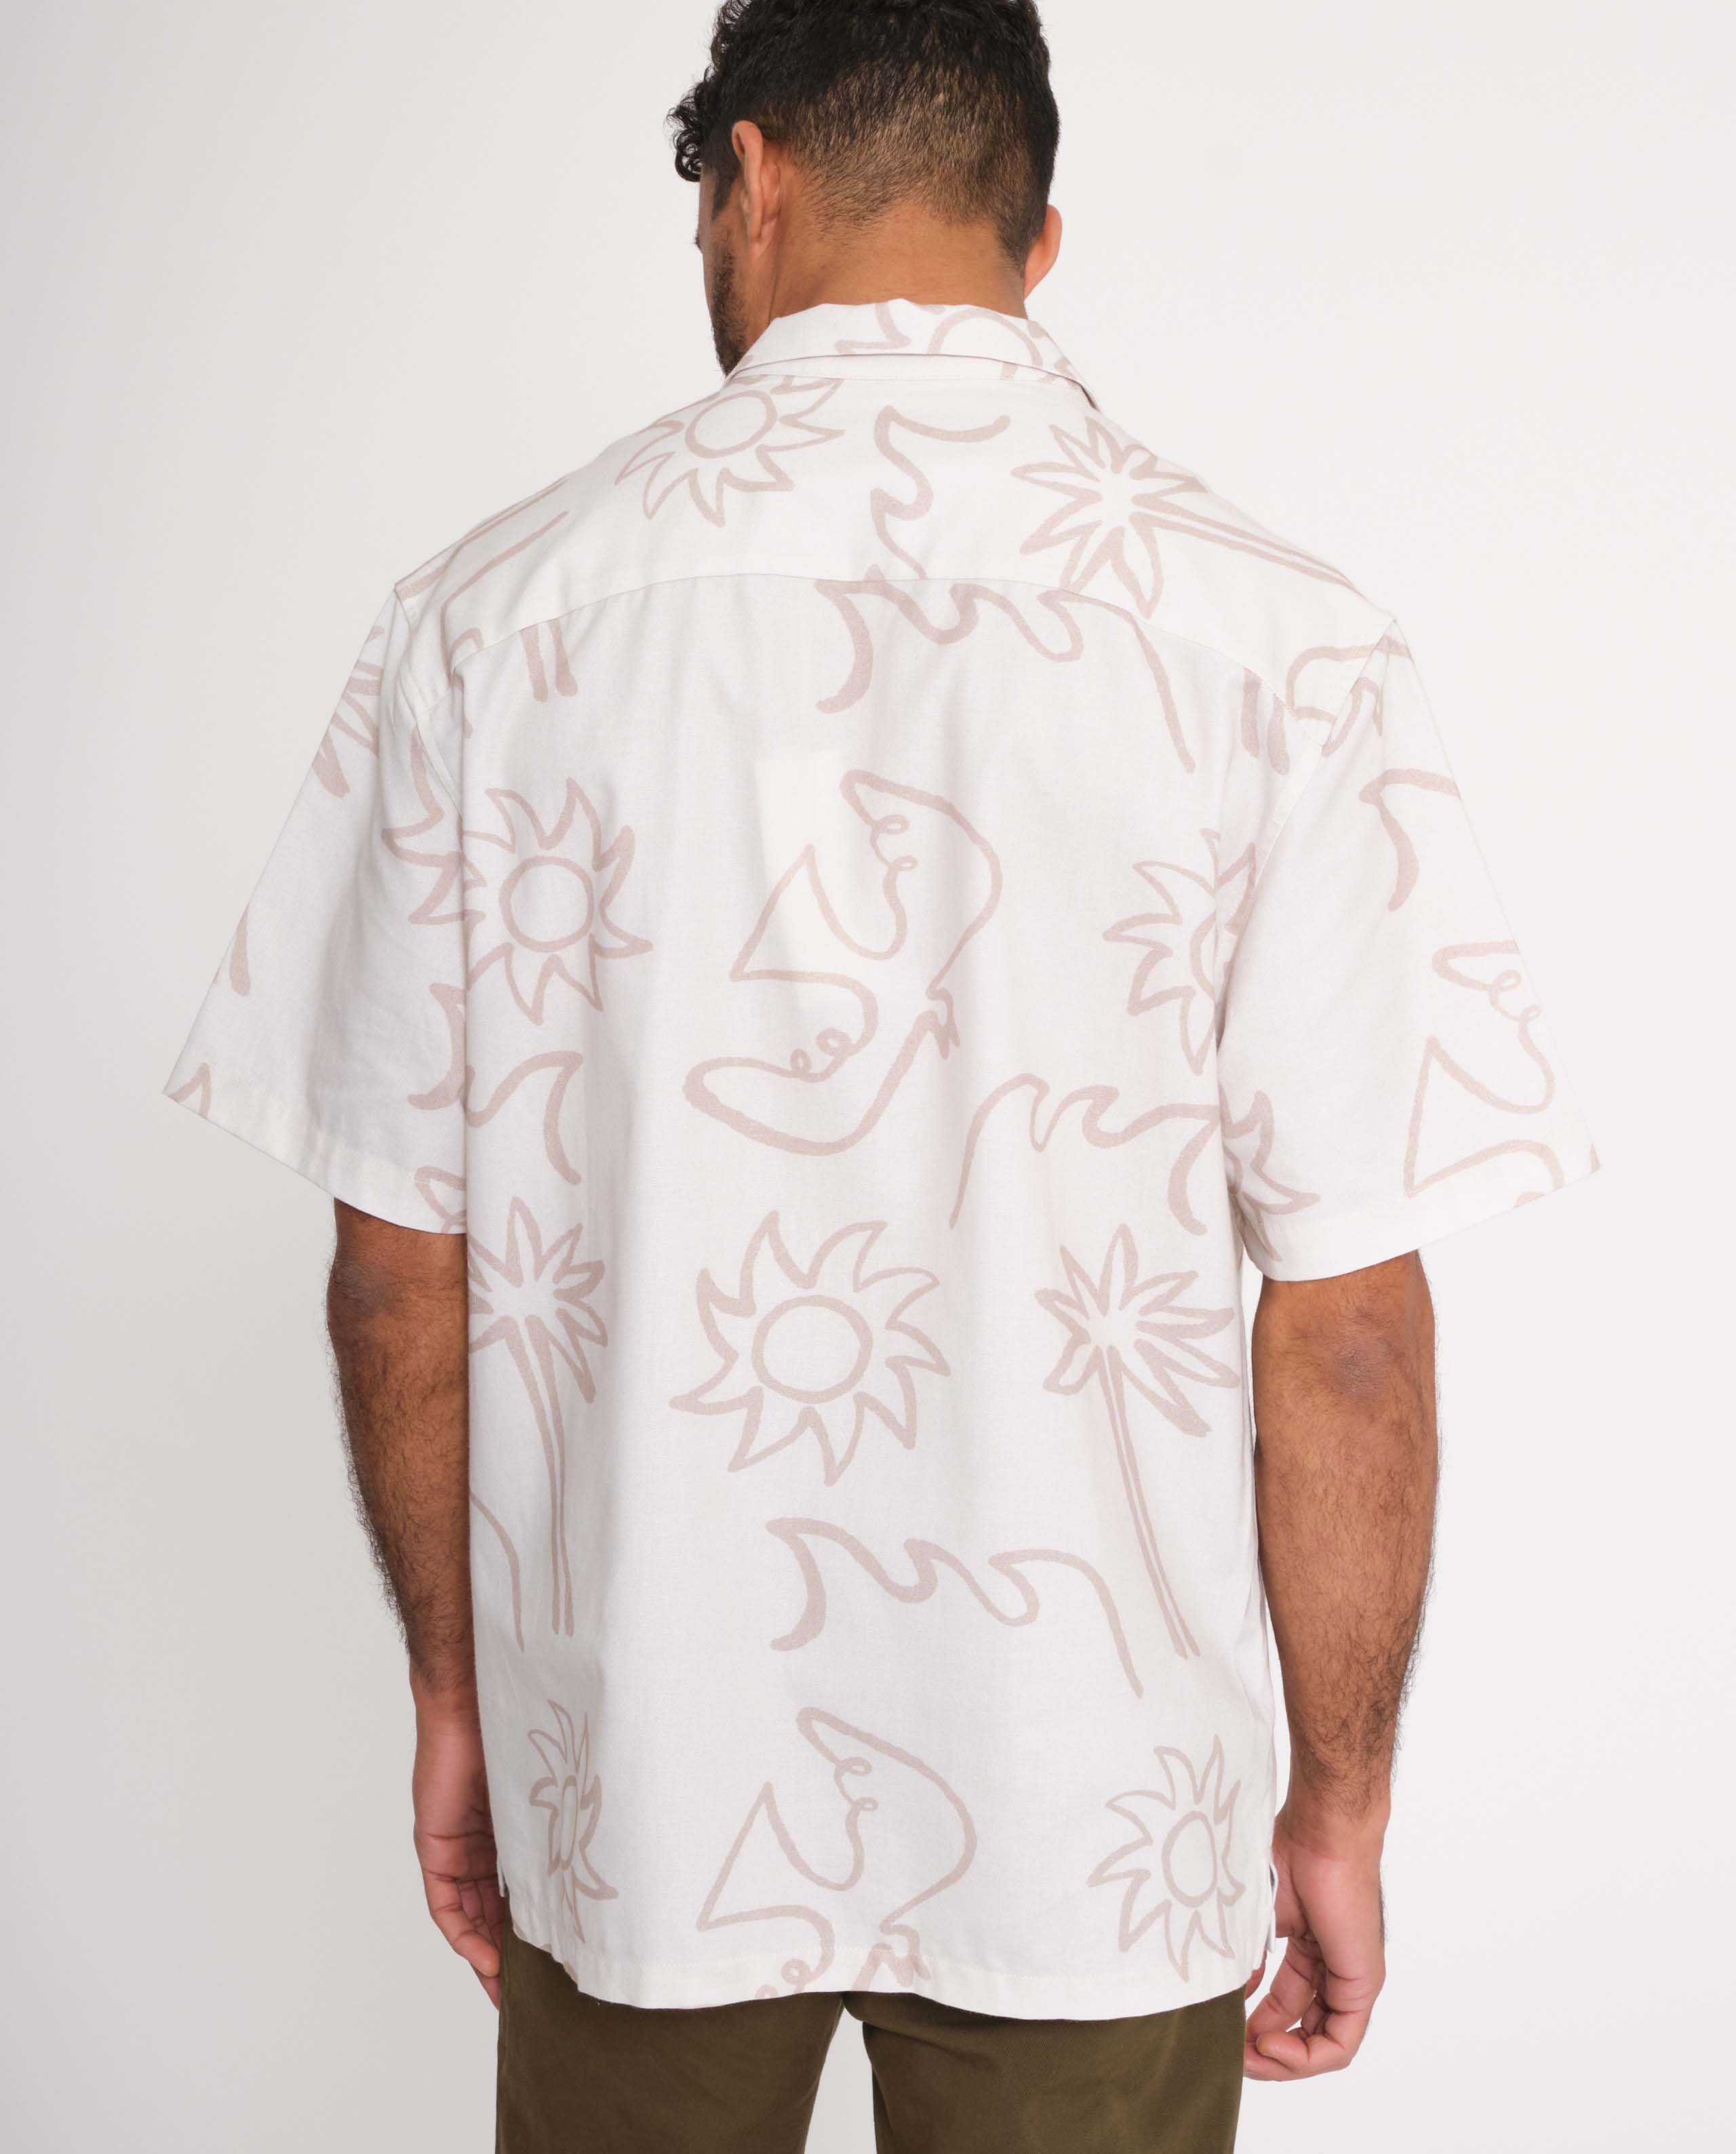 marché commun rotholz chemise manches courtes coton biologique imprimé artiste